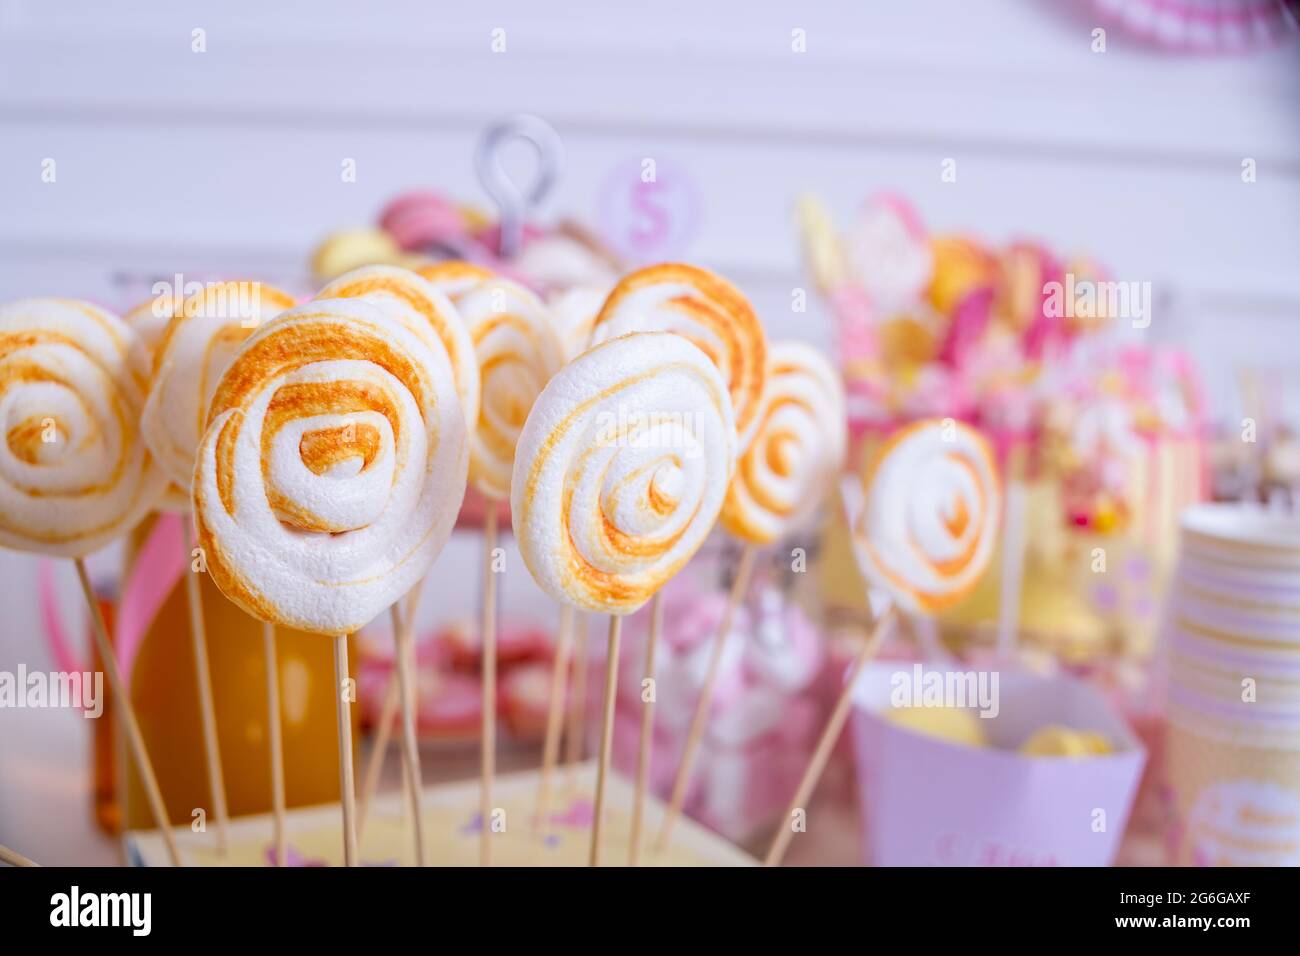 Süßigkeitenglas und ausgefallene Milchflaschen für Getränke auf einem  Desserttisch bei einer Geburtstagsparty oder Hochzeitsfeier.Sortiment an  Süßigkeiten. Cake Pops.Delicious Stockfotografie - Alamy